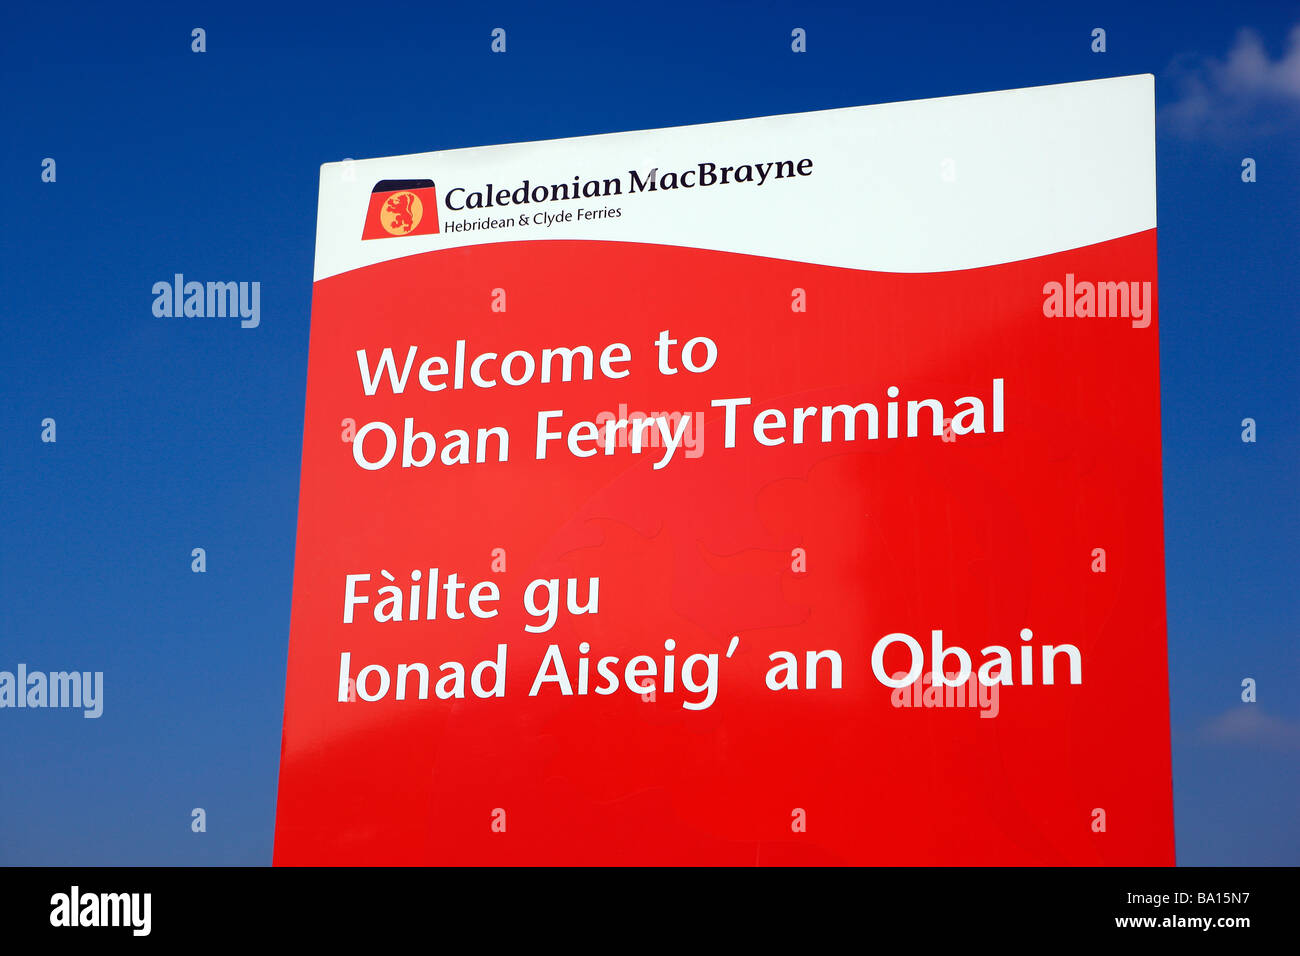 Oban Ferry Terminal sign Stock Photo